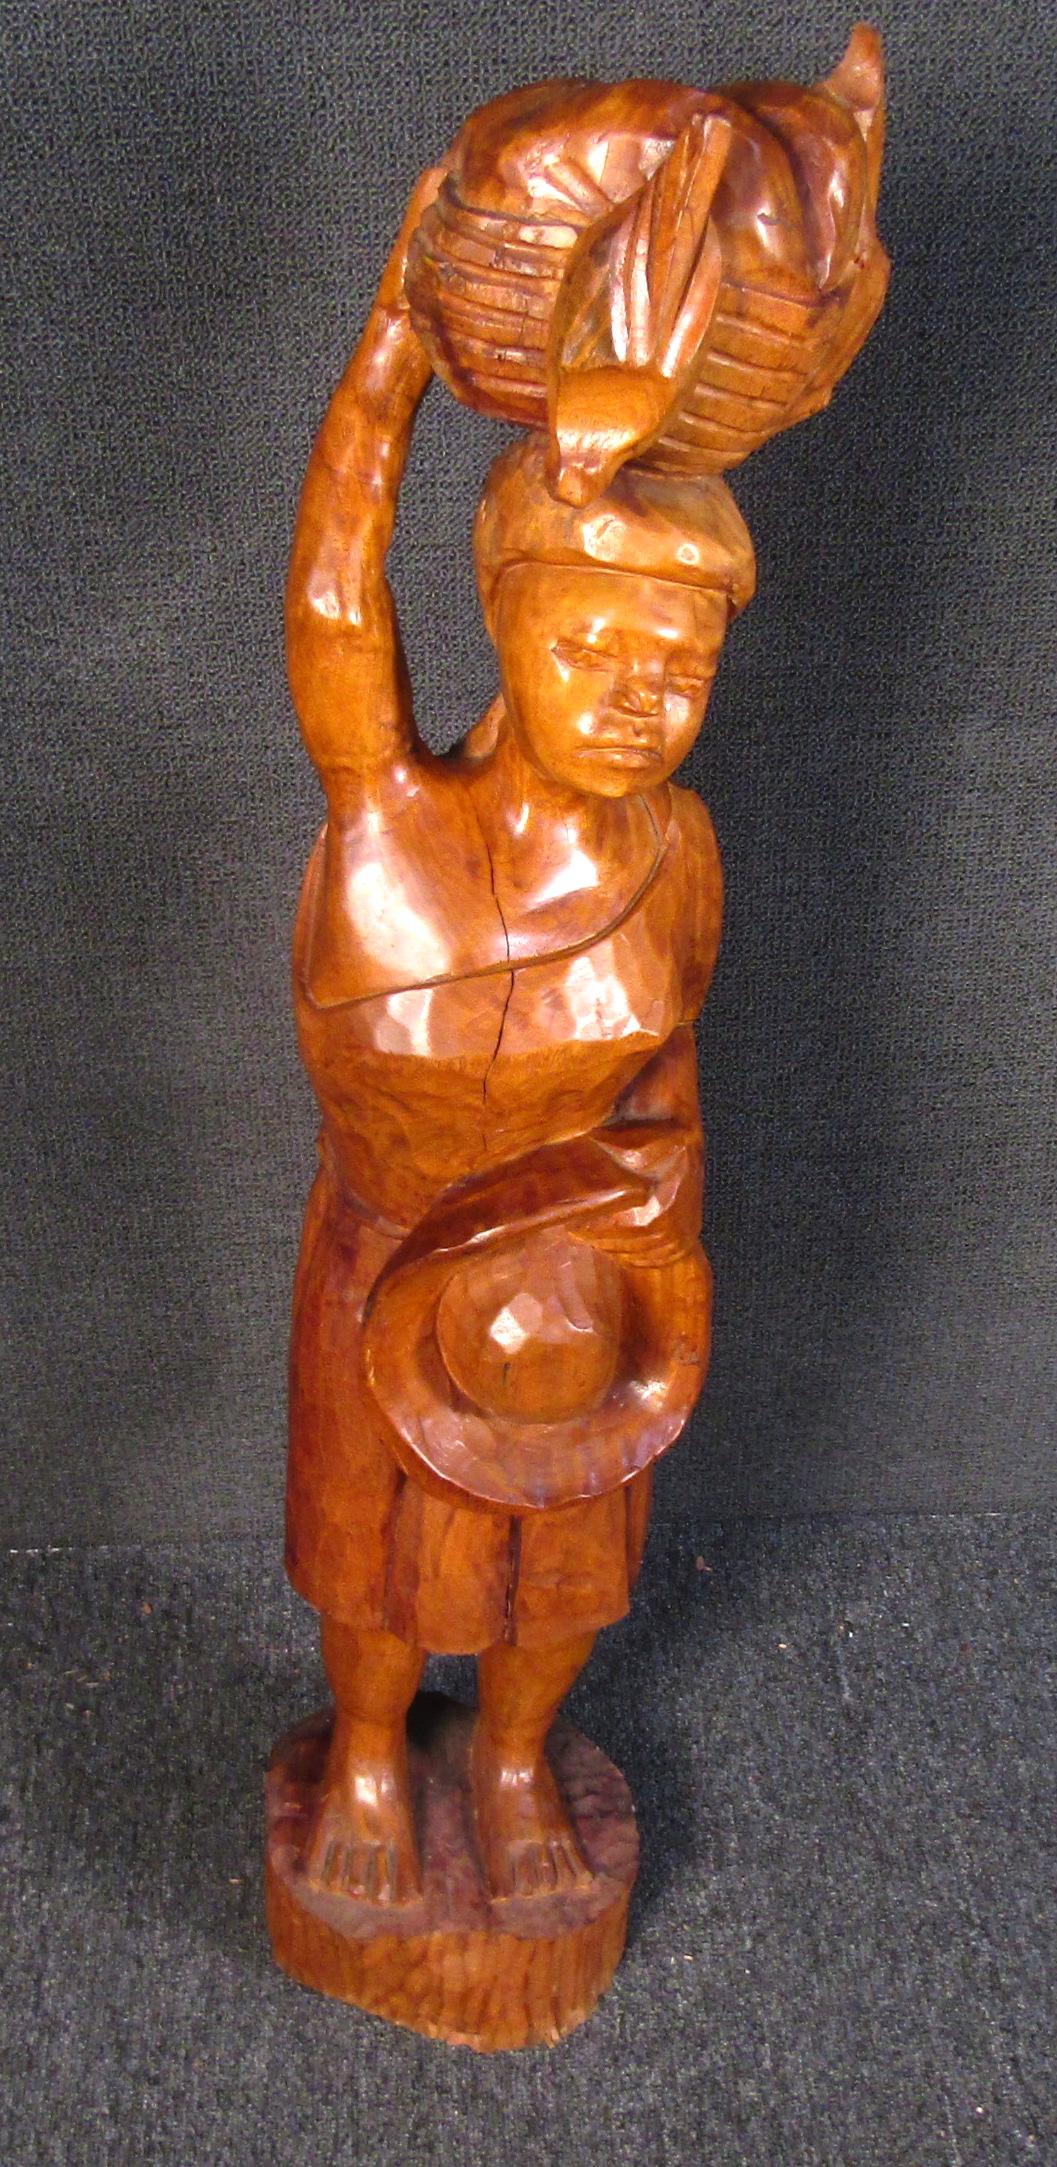 Wunderschönes Unikat einer afrikanischen geschnitzten Holzskulptur einer Frau, die einen Korb und einen Hut trägt. Diese atemberaubende, handgeschnitzte Skulptur aus warm gebeiztem Holz wird sicherlich ein Highlight in jeder Kunstsammlung